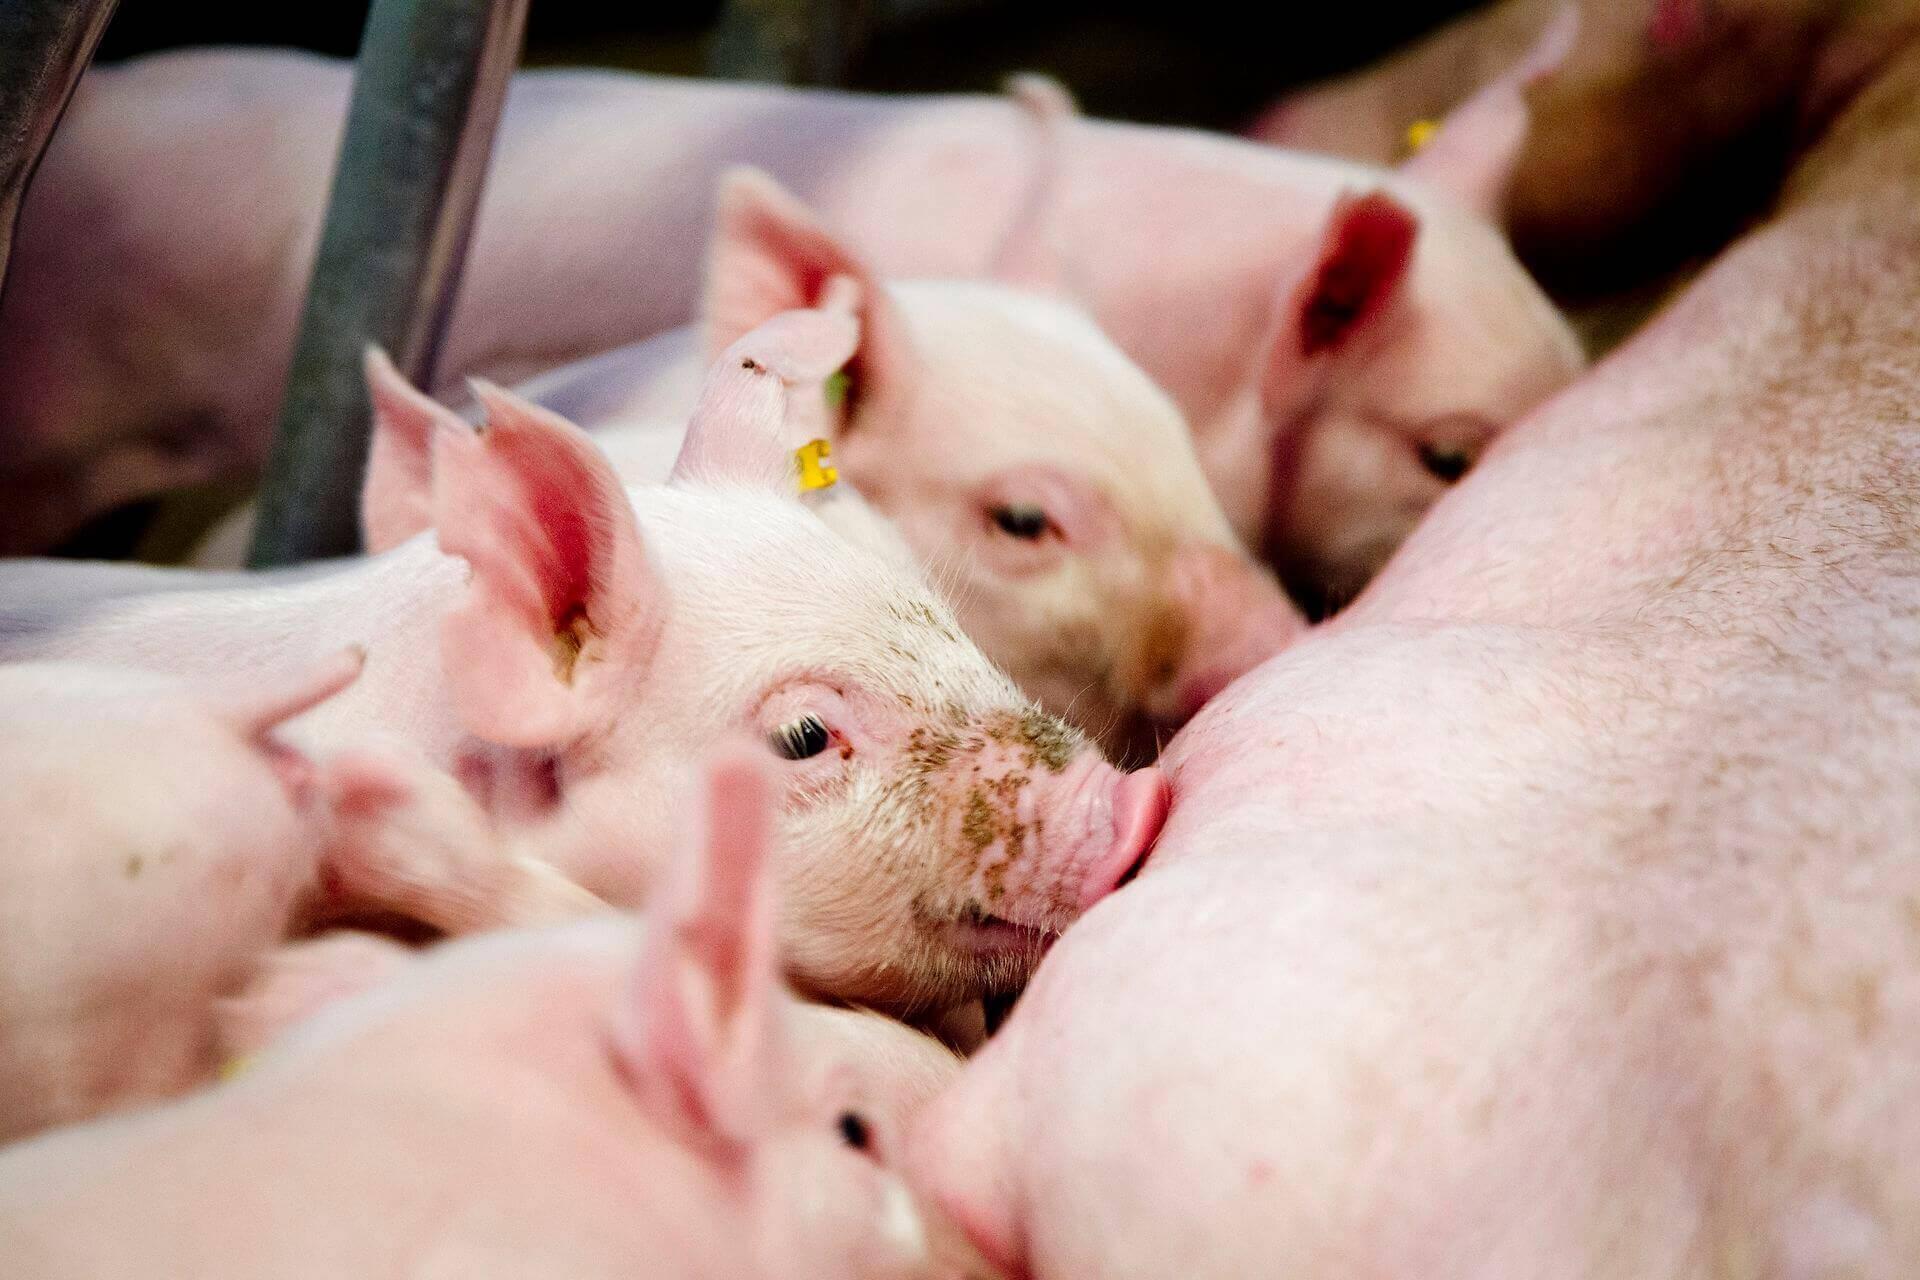 Sundhedsrisikoen ved intensiv svineproduktion blev for et år siden bekræftet af forskere ved Aarhus Universitet. Men kommunerne må stadig ikke sige nej tak til flere svinefarme,